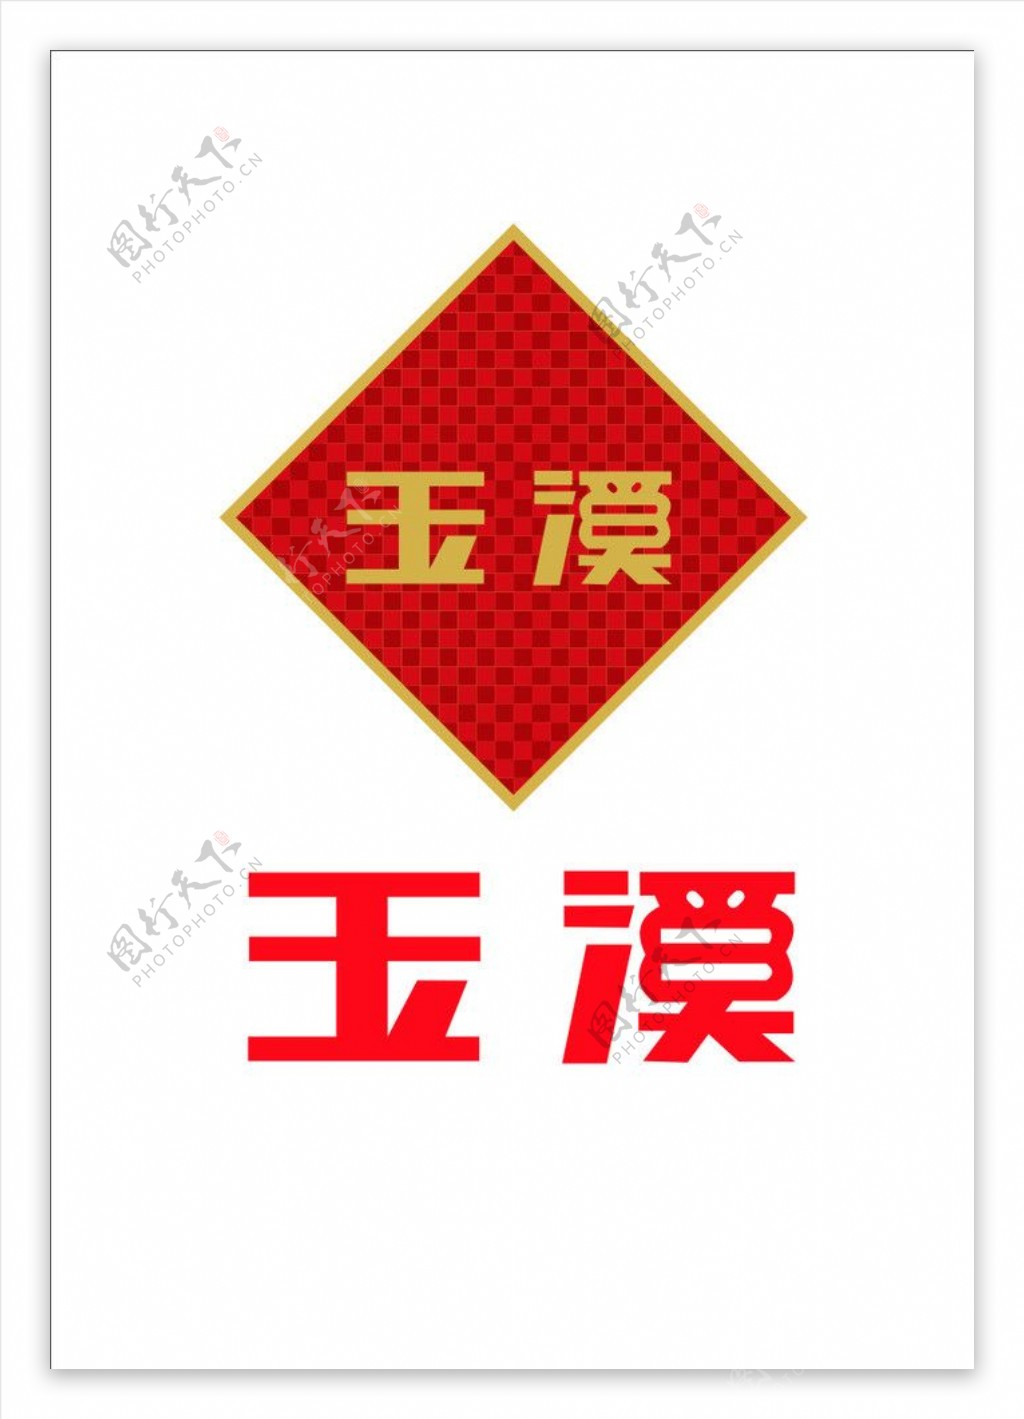 玉溪logo图片